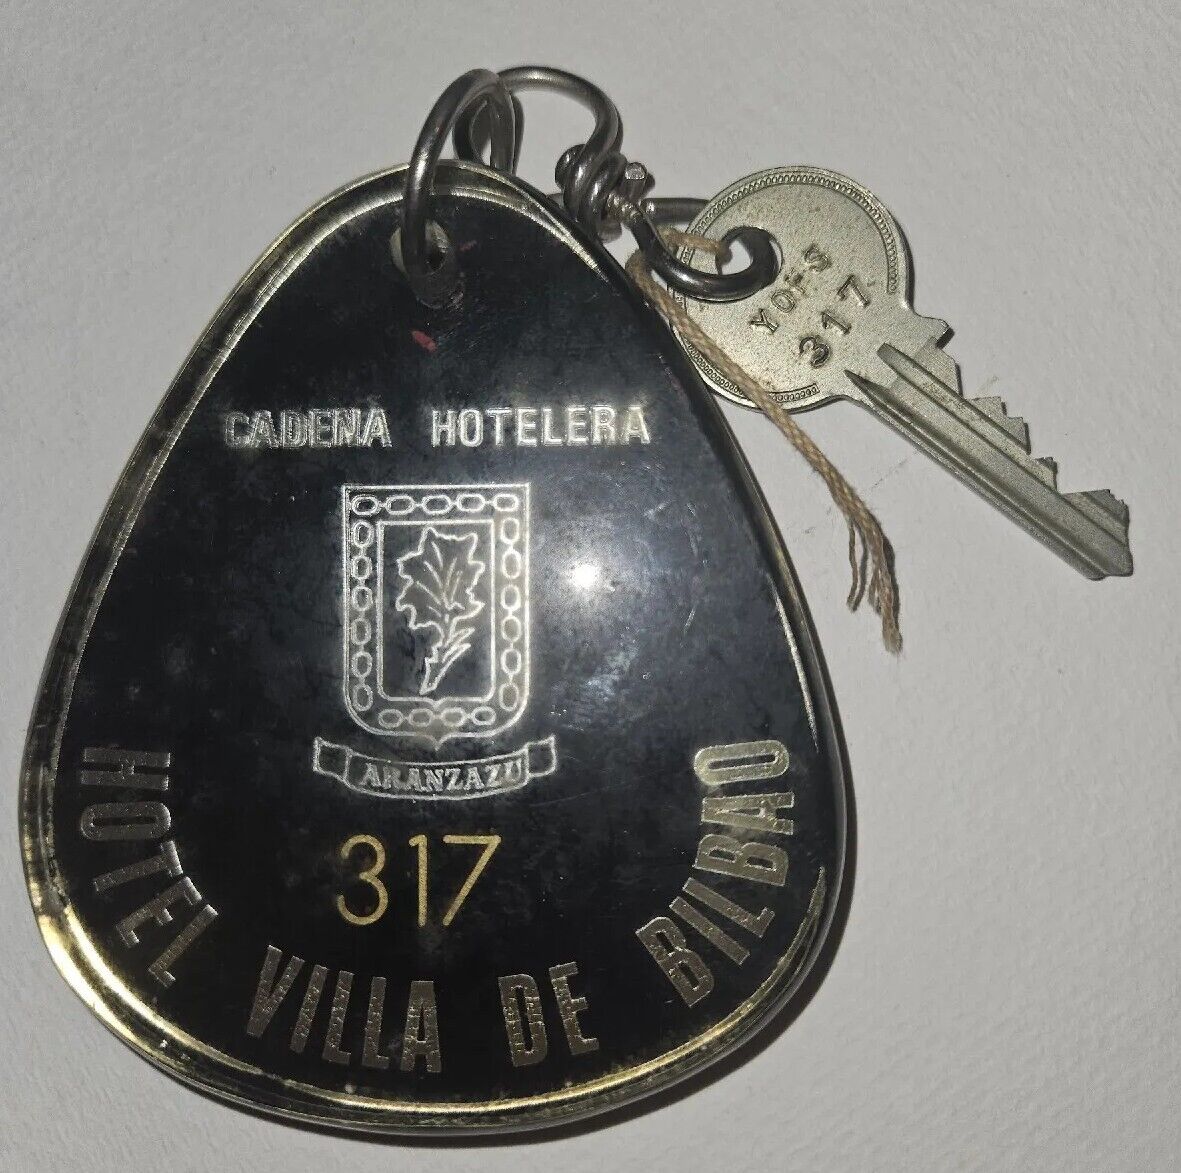 Vintage Hotel Key Antique Hotel Villa De Bilbao Cadena Hotelera Aranzazu  Rare